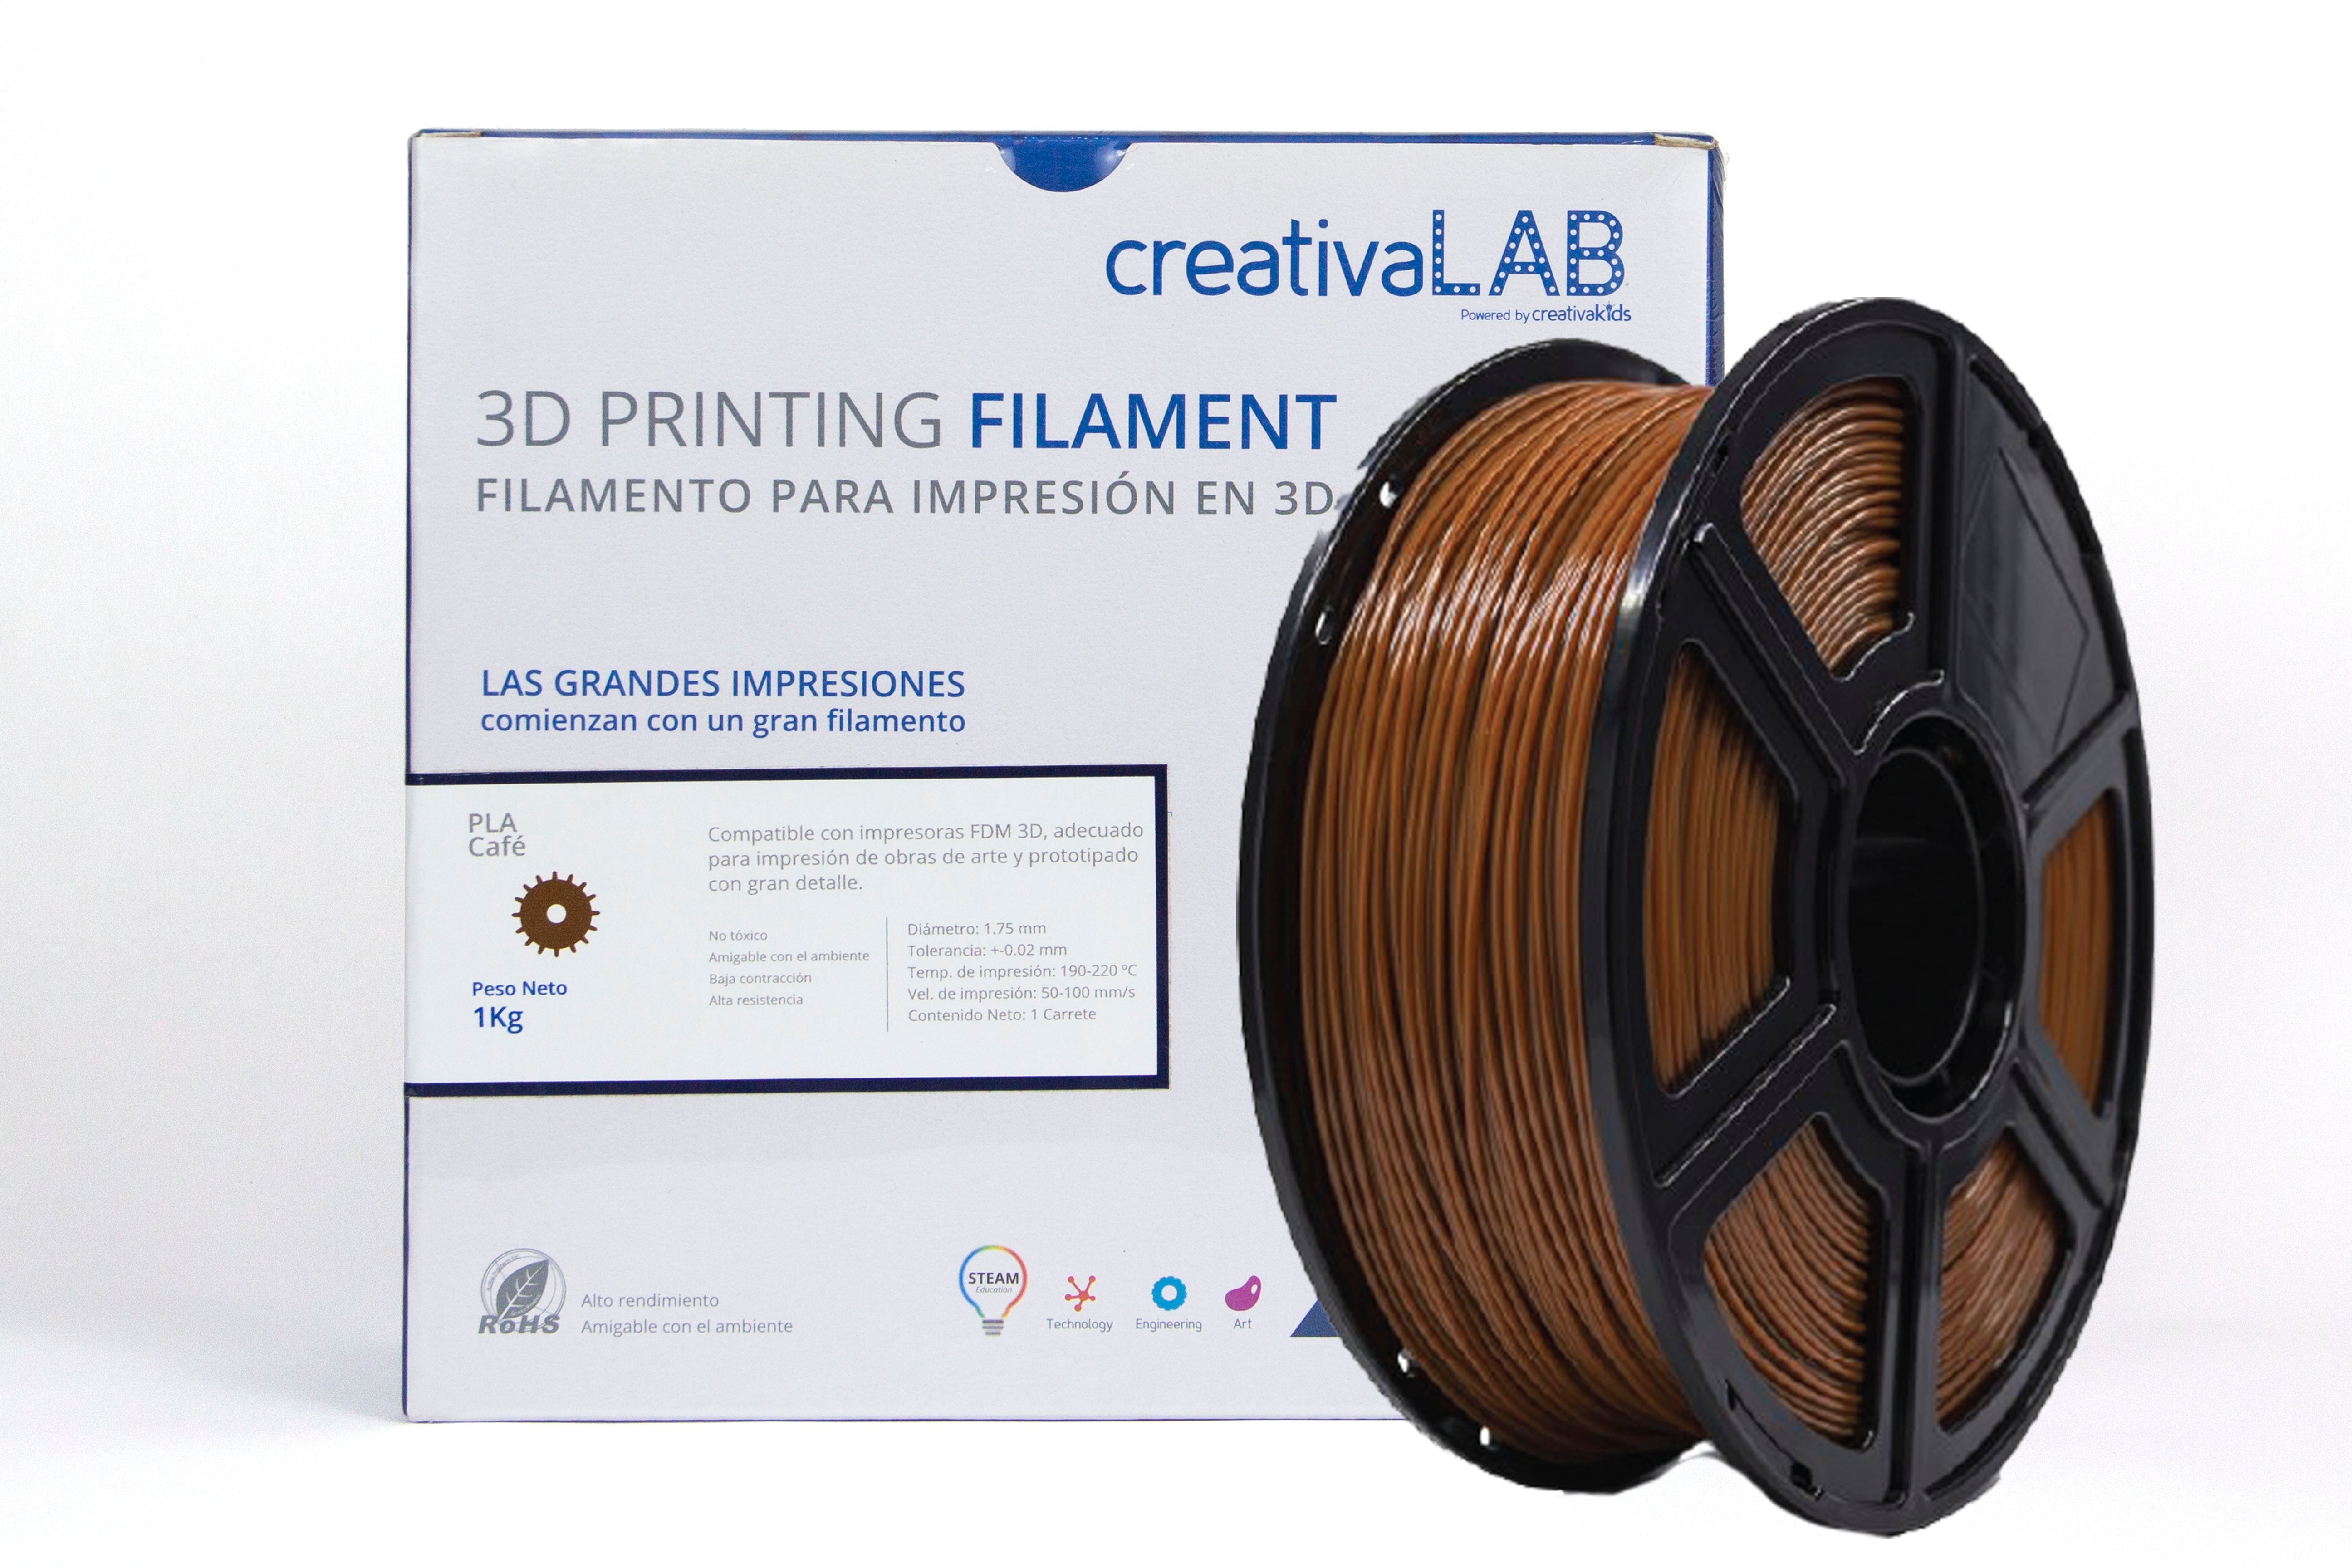 Filamento PLA 1.75 mm, PLA Filamento de Impresión 3D 1.75mm Materiales  Precisión +/- 0.02 mm 1kg/un carrete, Color Blanco